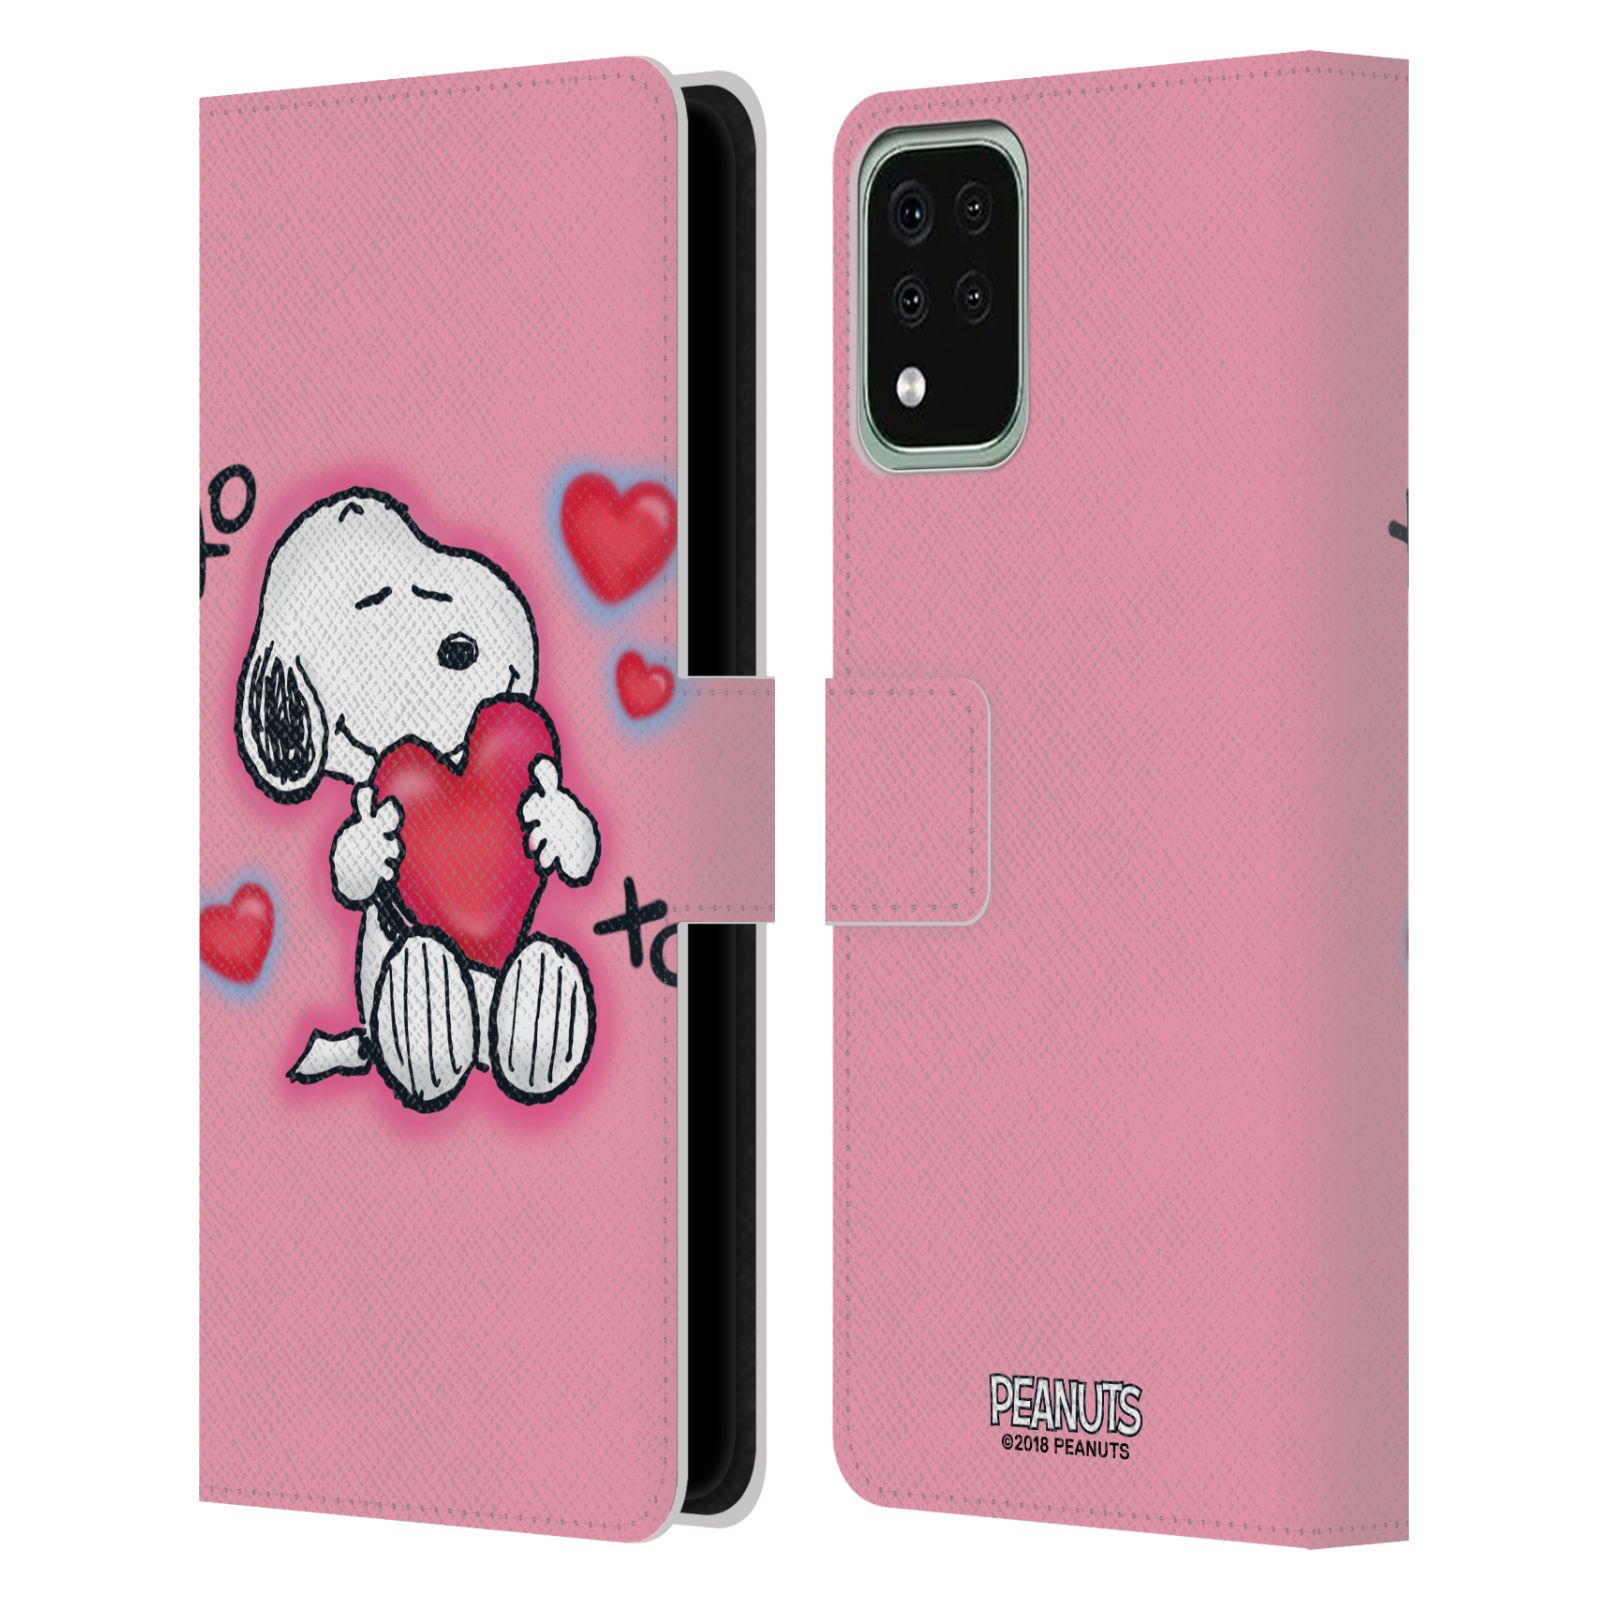 Pouzdro na mobil LG K42 / K52 / K62 - HEAD CASE - Peanuts - Snoopy a srdíčka